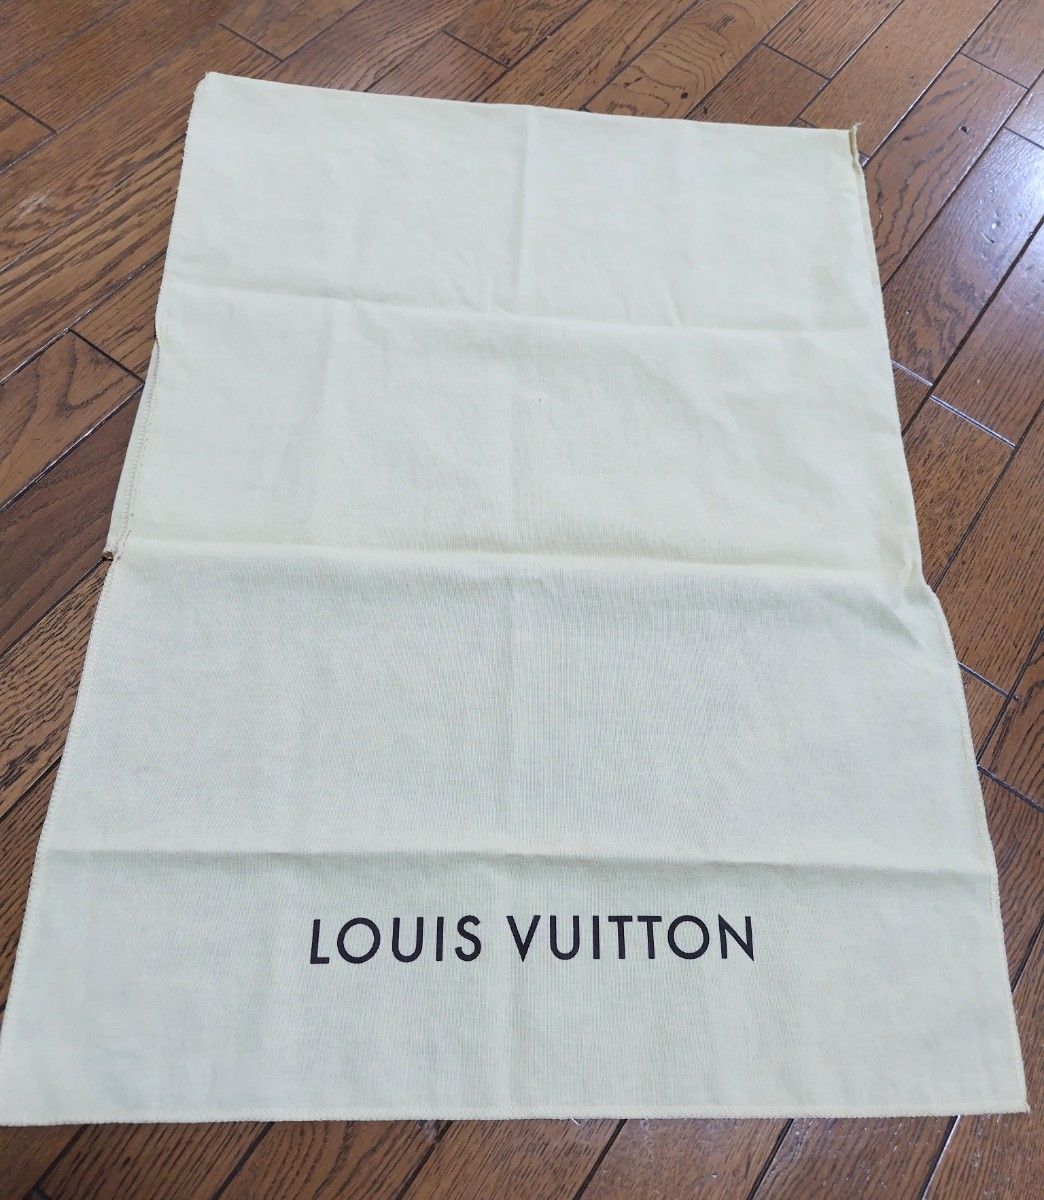 ルイヴィトン 布カバー バッグカバー 布カバーLOUISVUITTON 布ケース 布袋 巾着袋